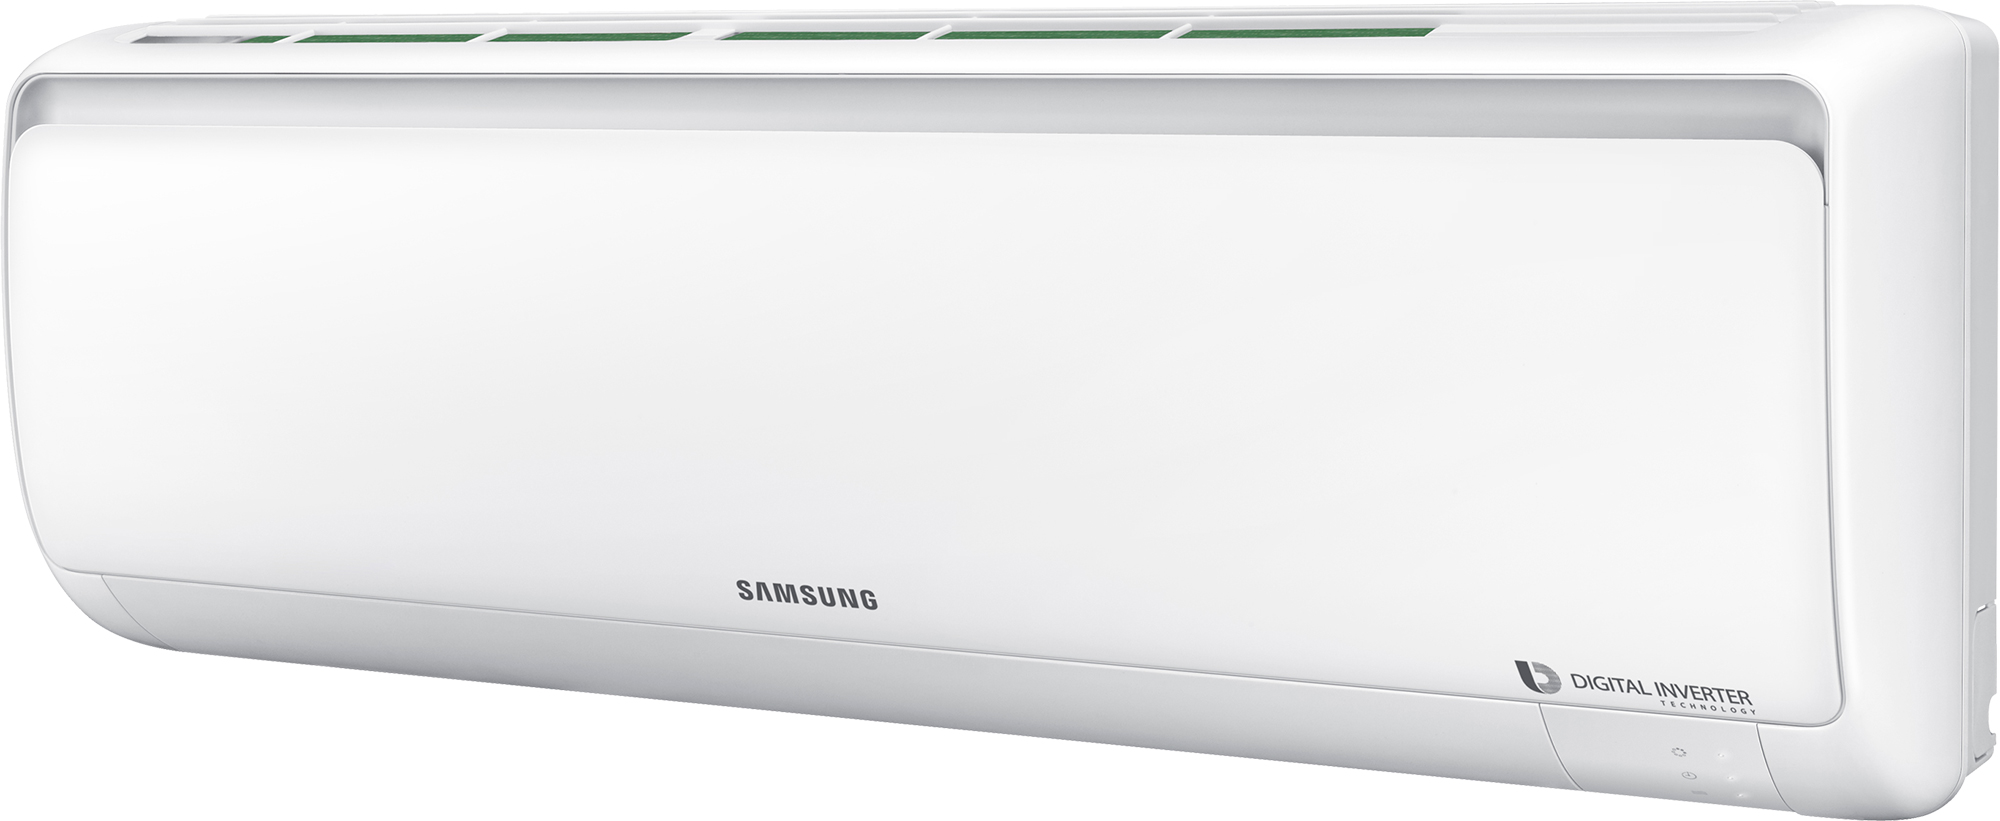 Кондиционер сплит-система Samsung AR09RSFPAWQNER / AR09RSFPAWQXER внешний вид - фото 9